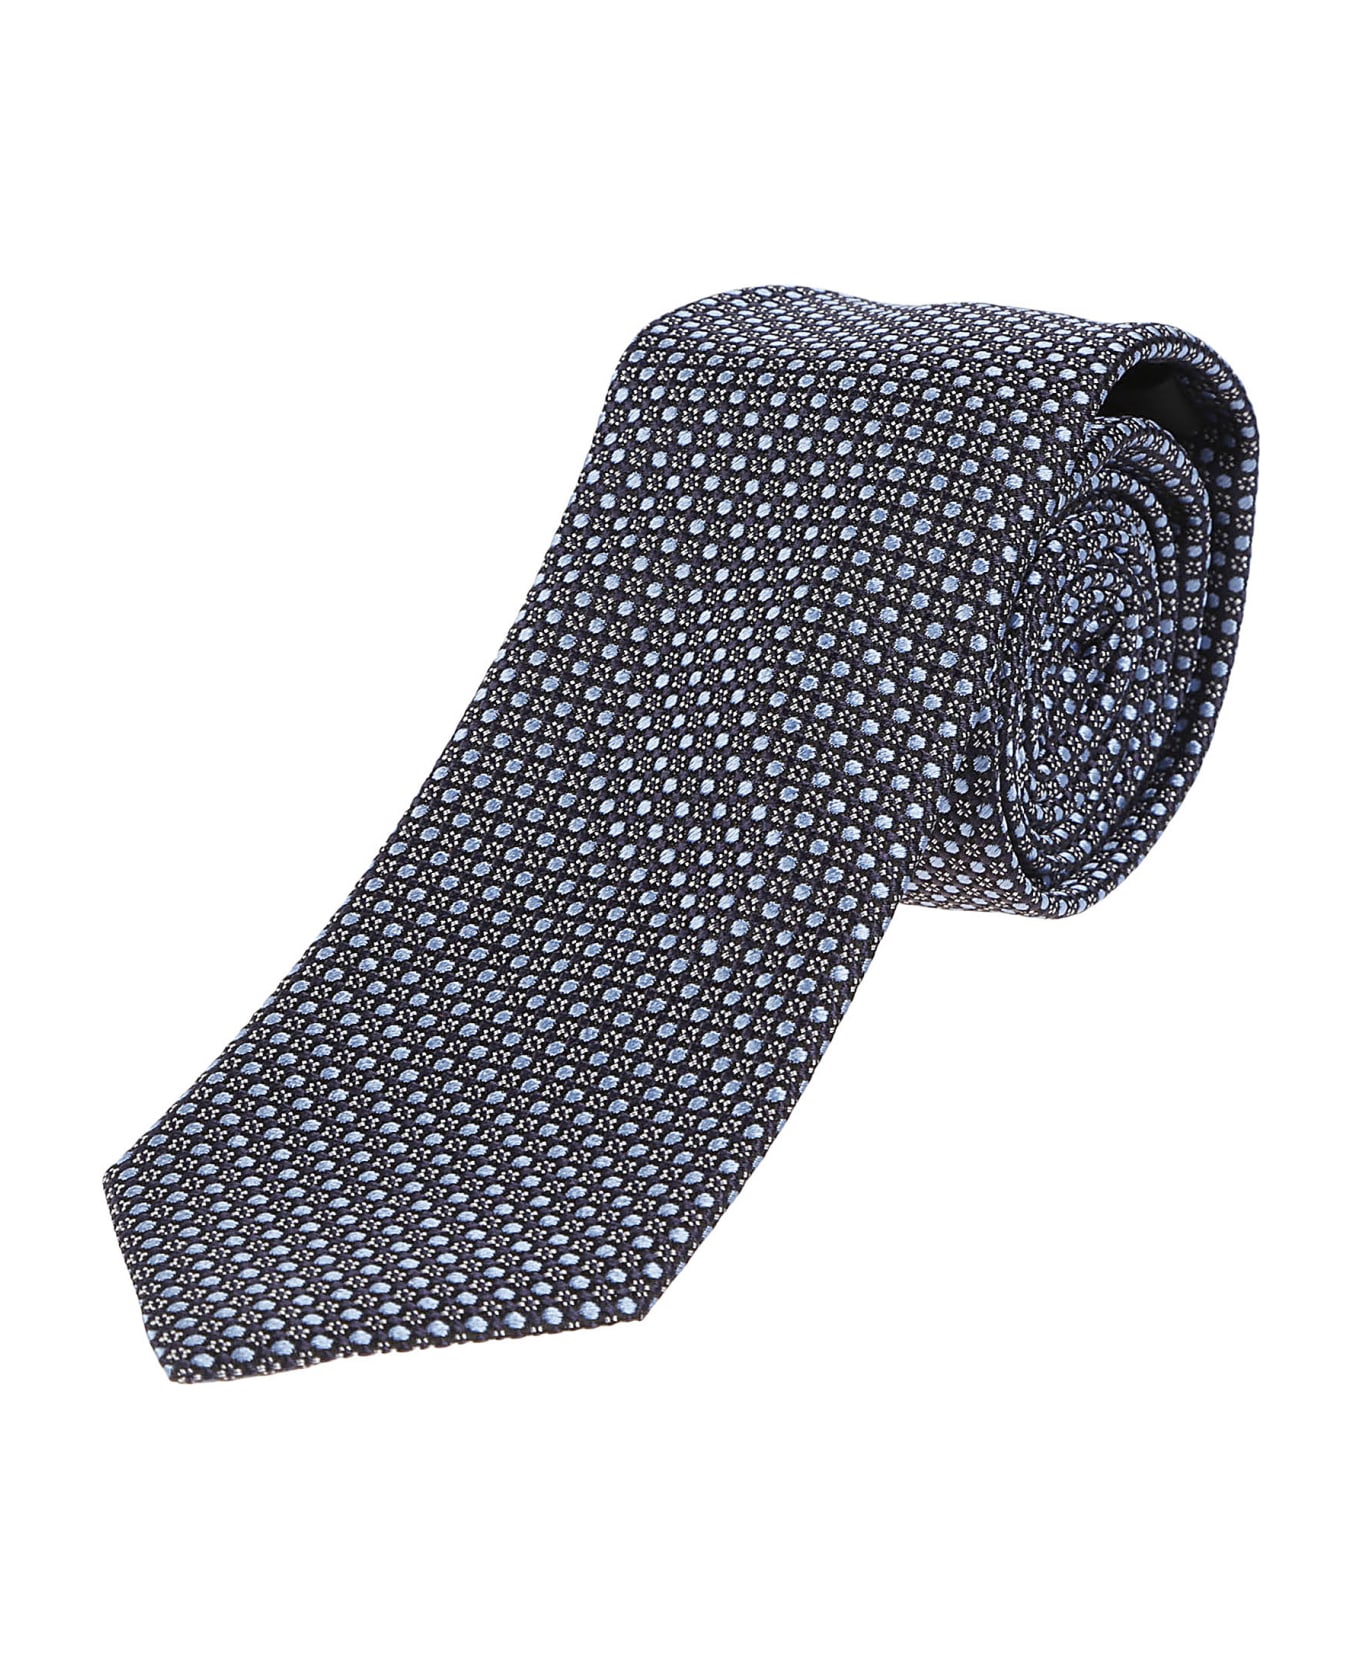 Zegna Lux Tailoring Tie - Blu Navy